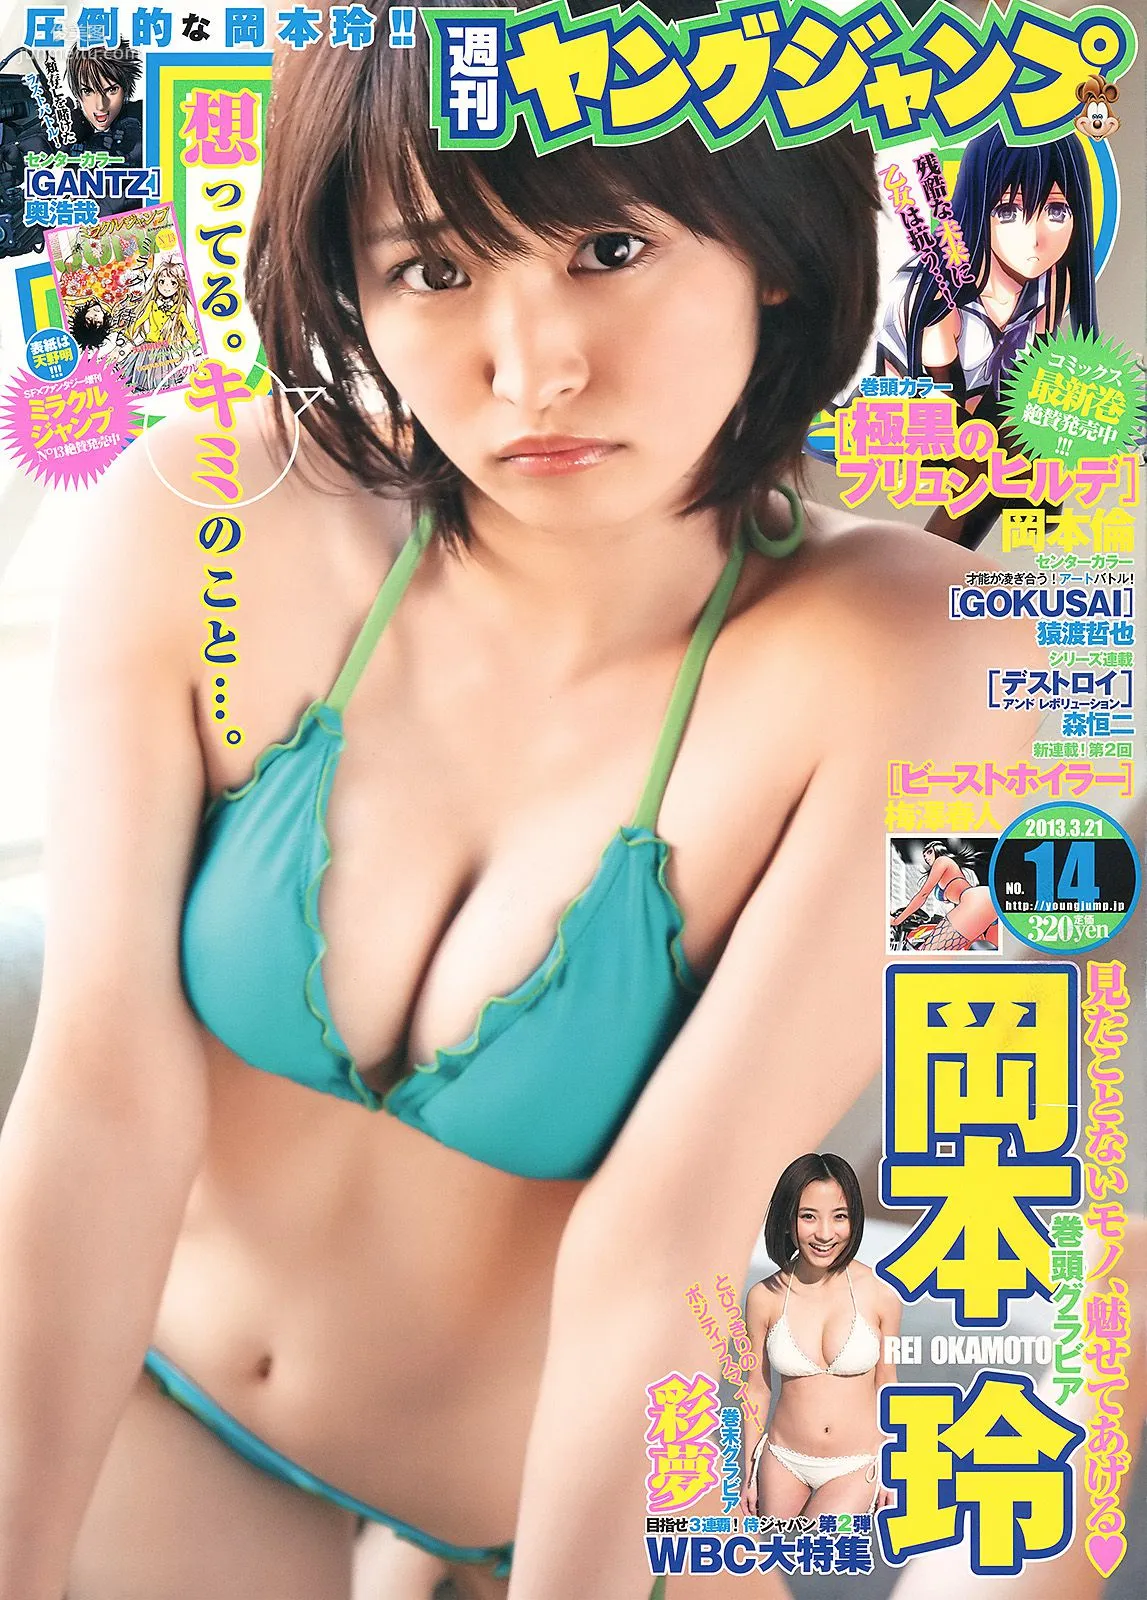 岡本玲 彩夢 [Weekly Young Jump] 2013年No.14 写真杂志1